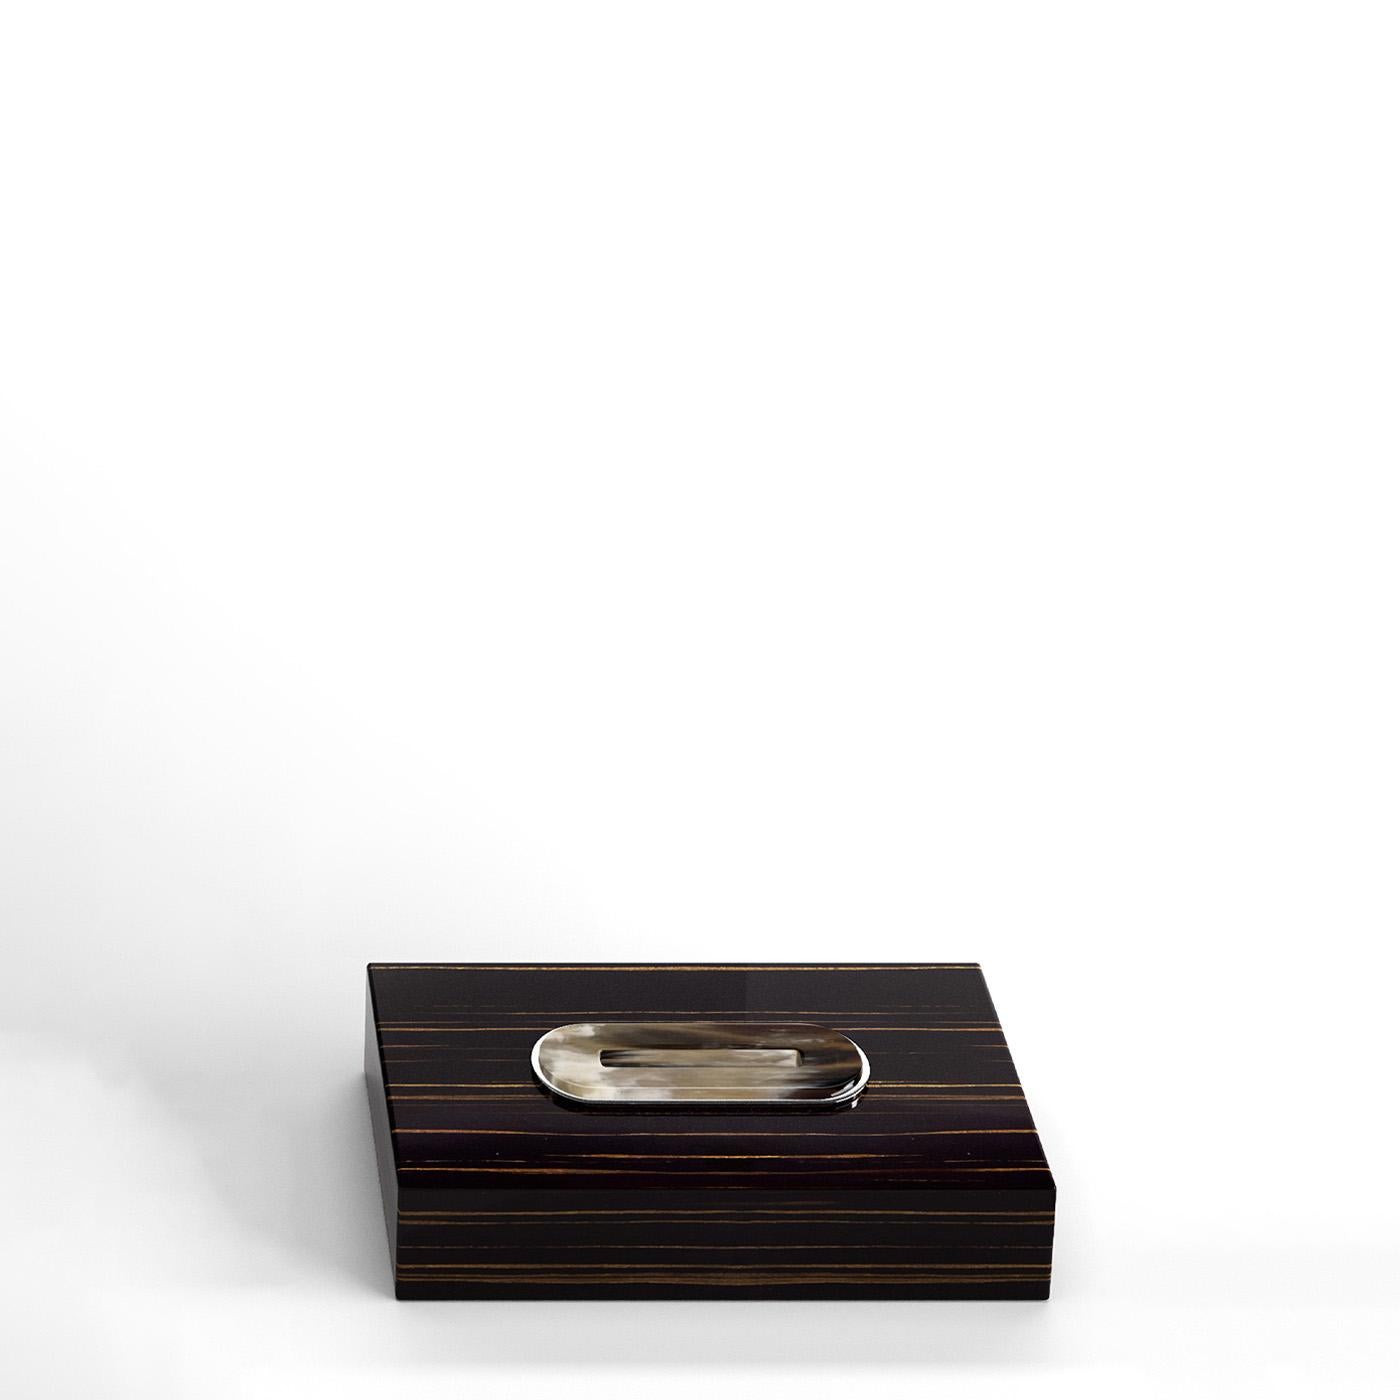 Veletta Tissue Box Holder in Black Lacquered Wood and Corno Italiano, Mod. 2430 In New Condition For Sale In Recanati, Macerata